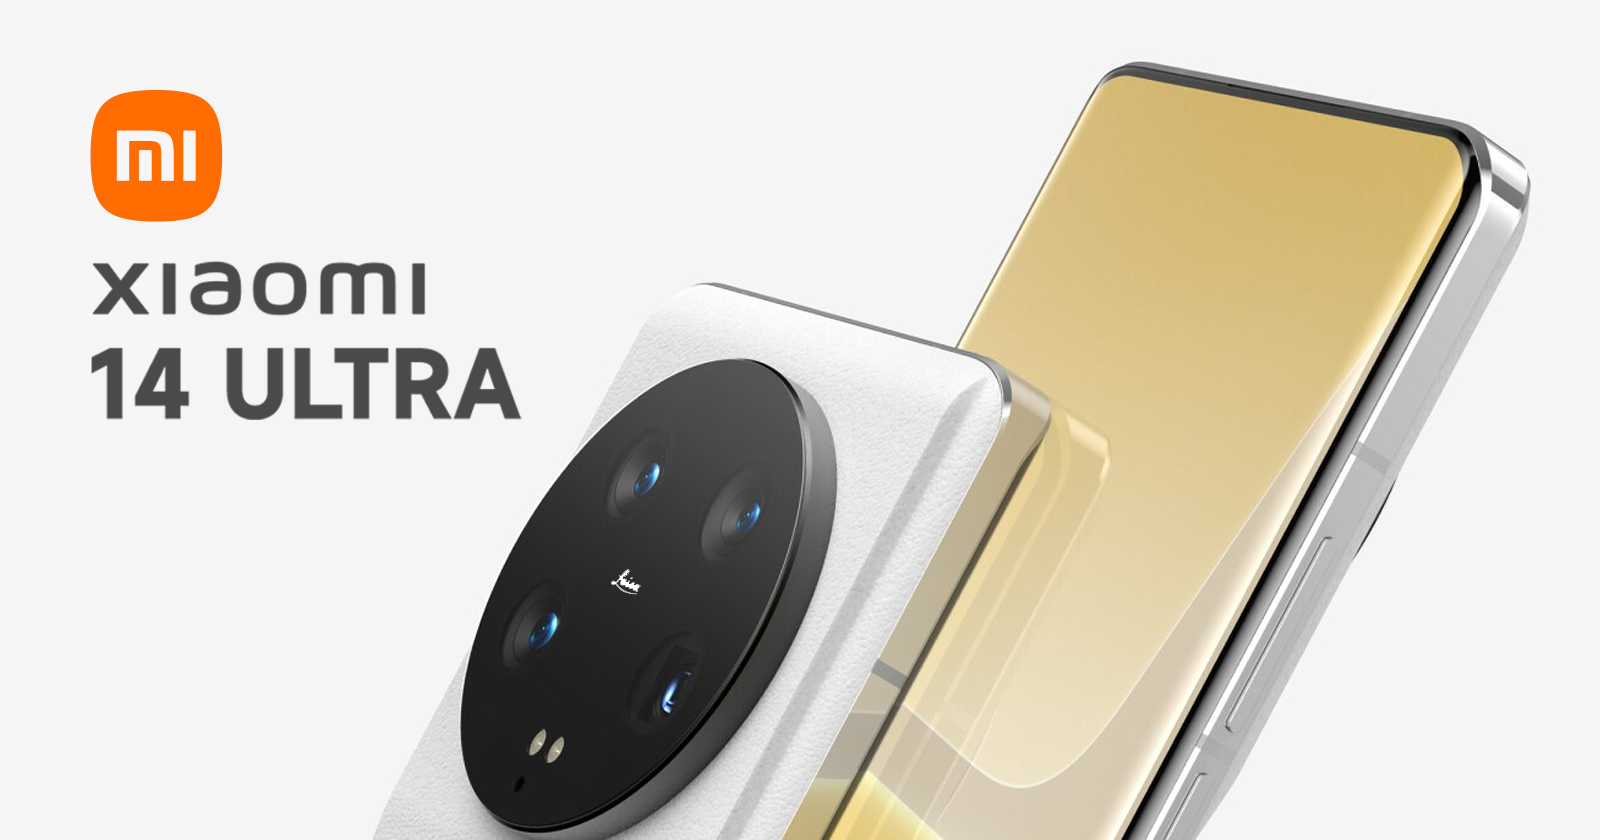 Gerücht: Xiaomi 14 Ultra wird zwei Versionen bekommen - eine mit einer Frontkamera unter dem Bildschirm und eine normale